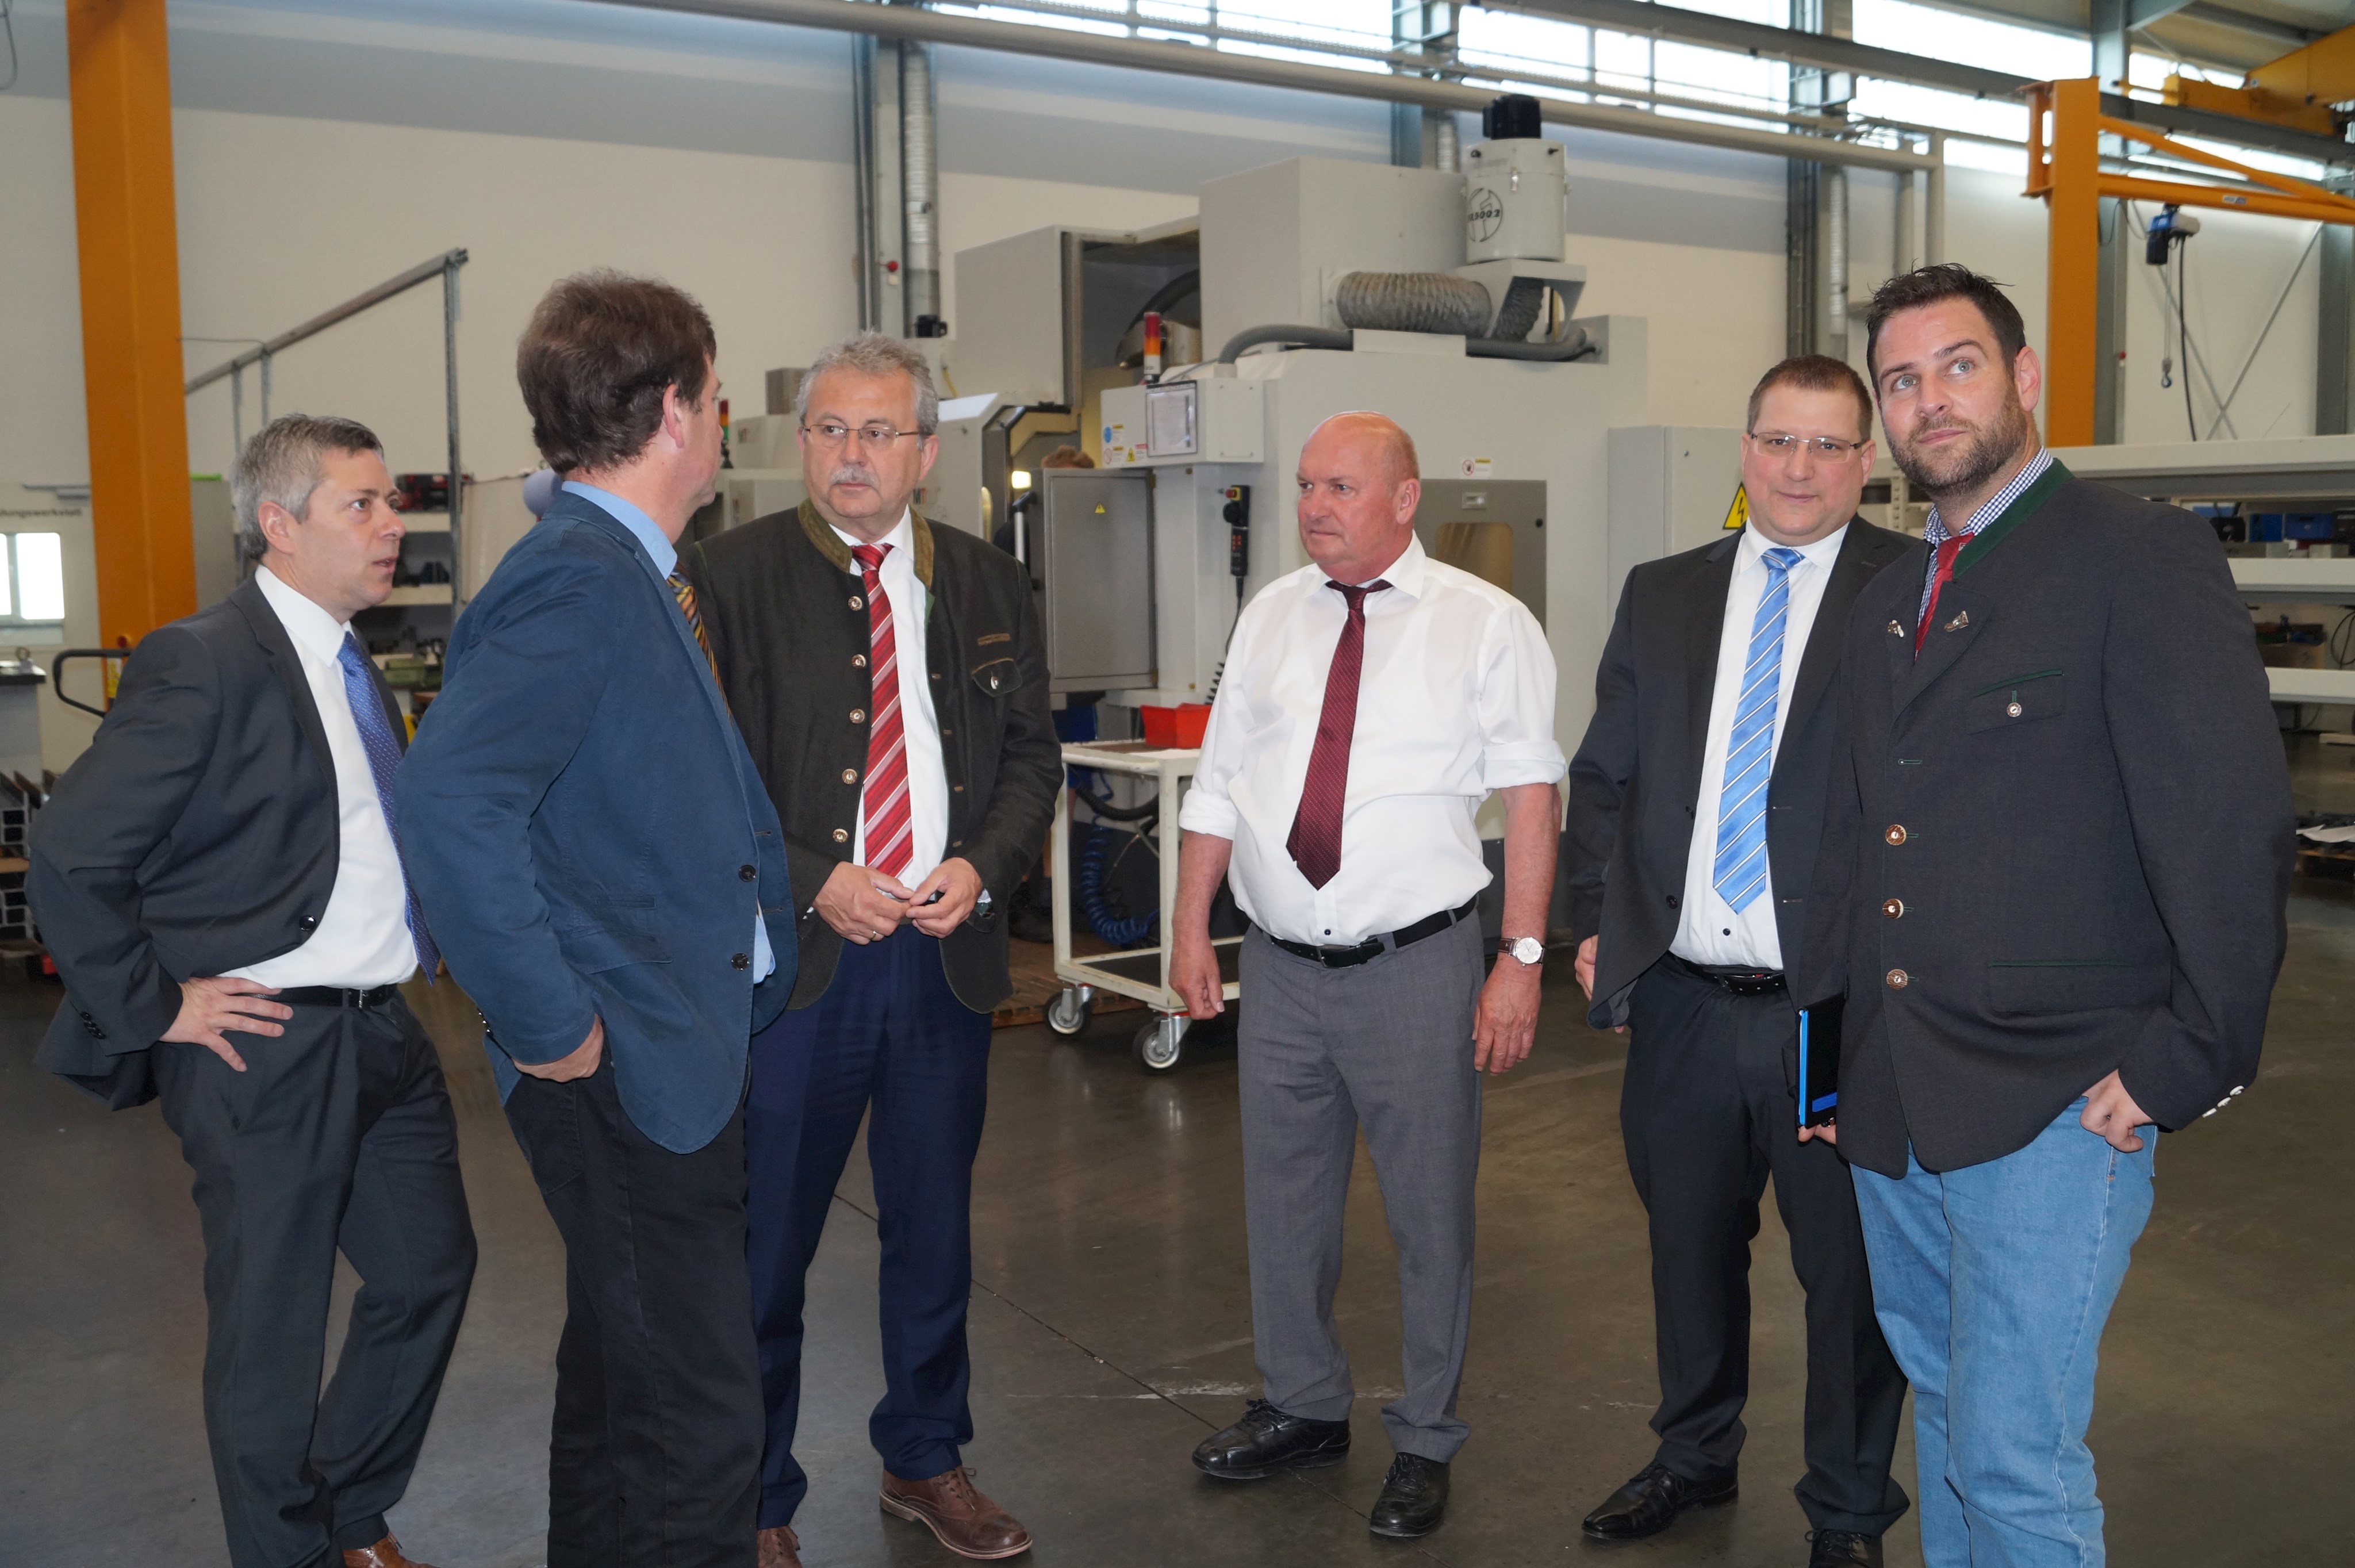 Landrat Josef Laumer (3. von links) und Wirtschaftsreferent Martin Köck (ganz rechts) mit den Vertretern von Moll Automatisierung GmbH bei der Betriebsbesichtigung auf dem Werksgelände der Firma.